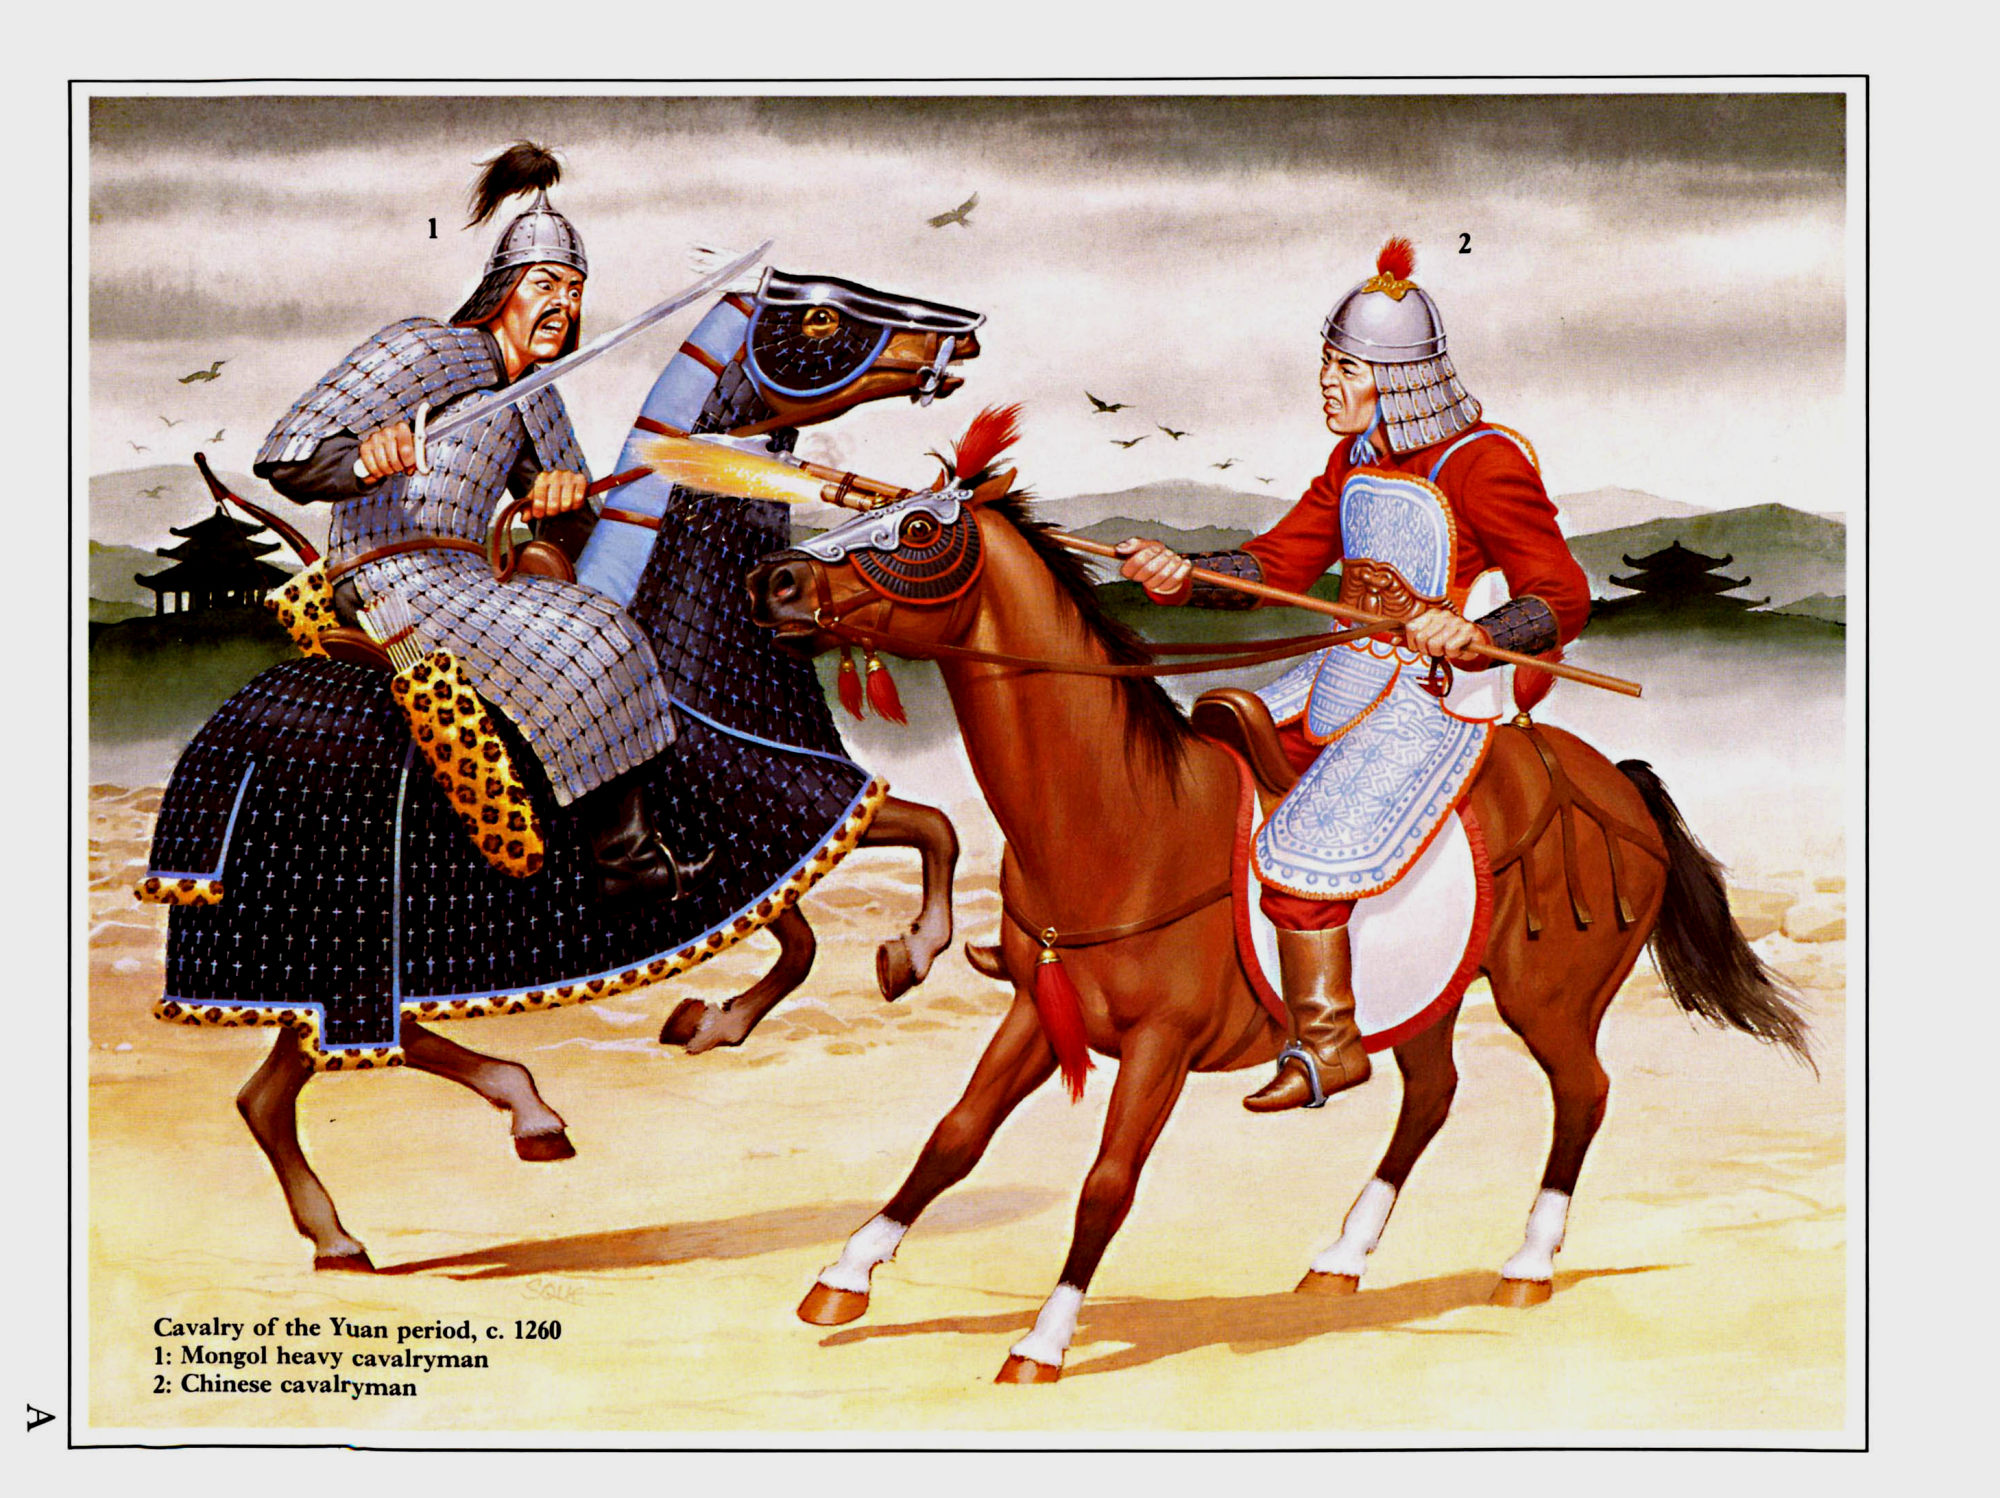 与蒙古甲胄骑兵战斗的南宋末期骑兵，马铠已经被抛弃了